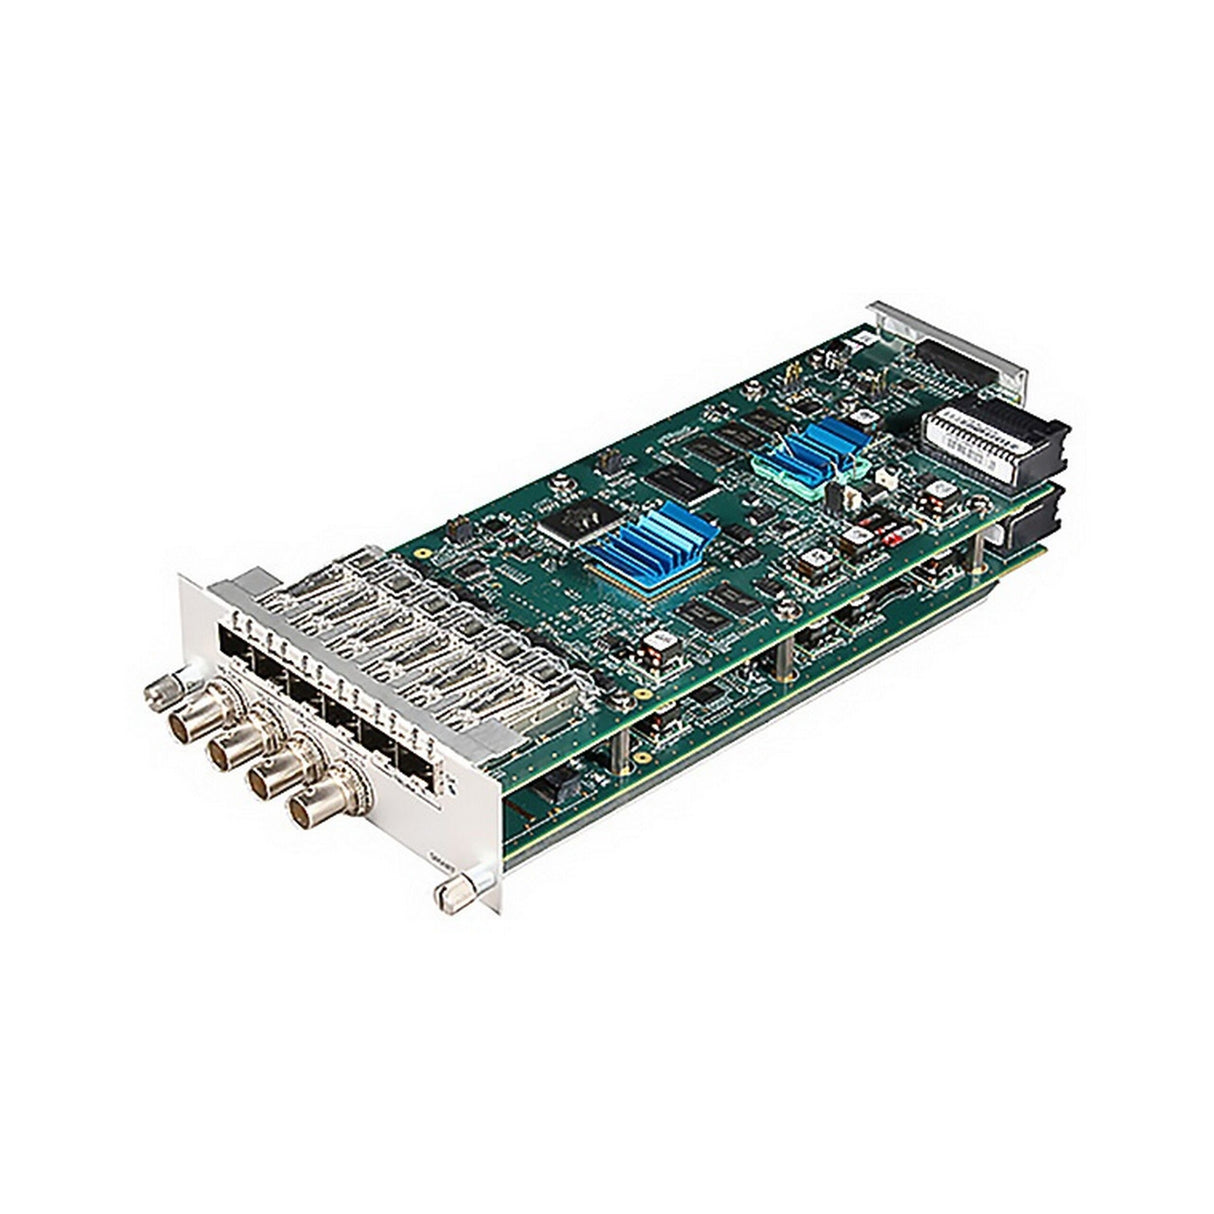 Artel FiberLink 390-008454-10 SMARTST2022 3G/HD/SD ASI and Gig-E Delivery Over 10 Gig Ethernet